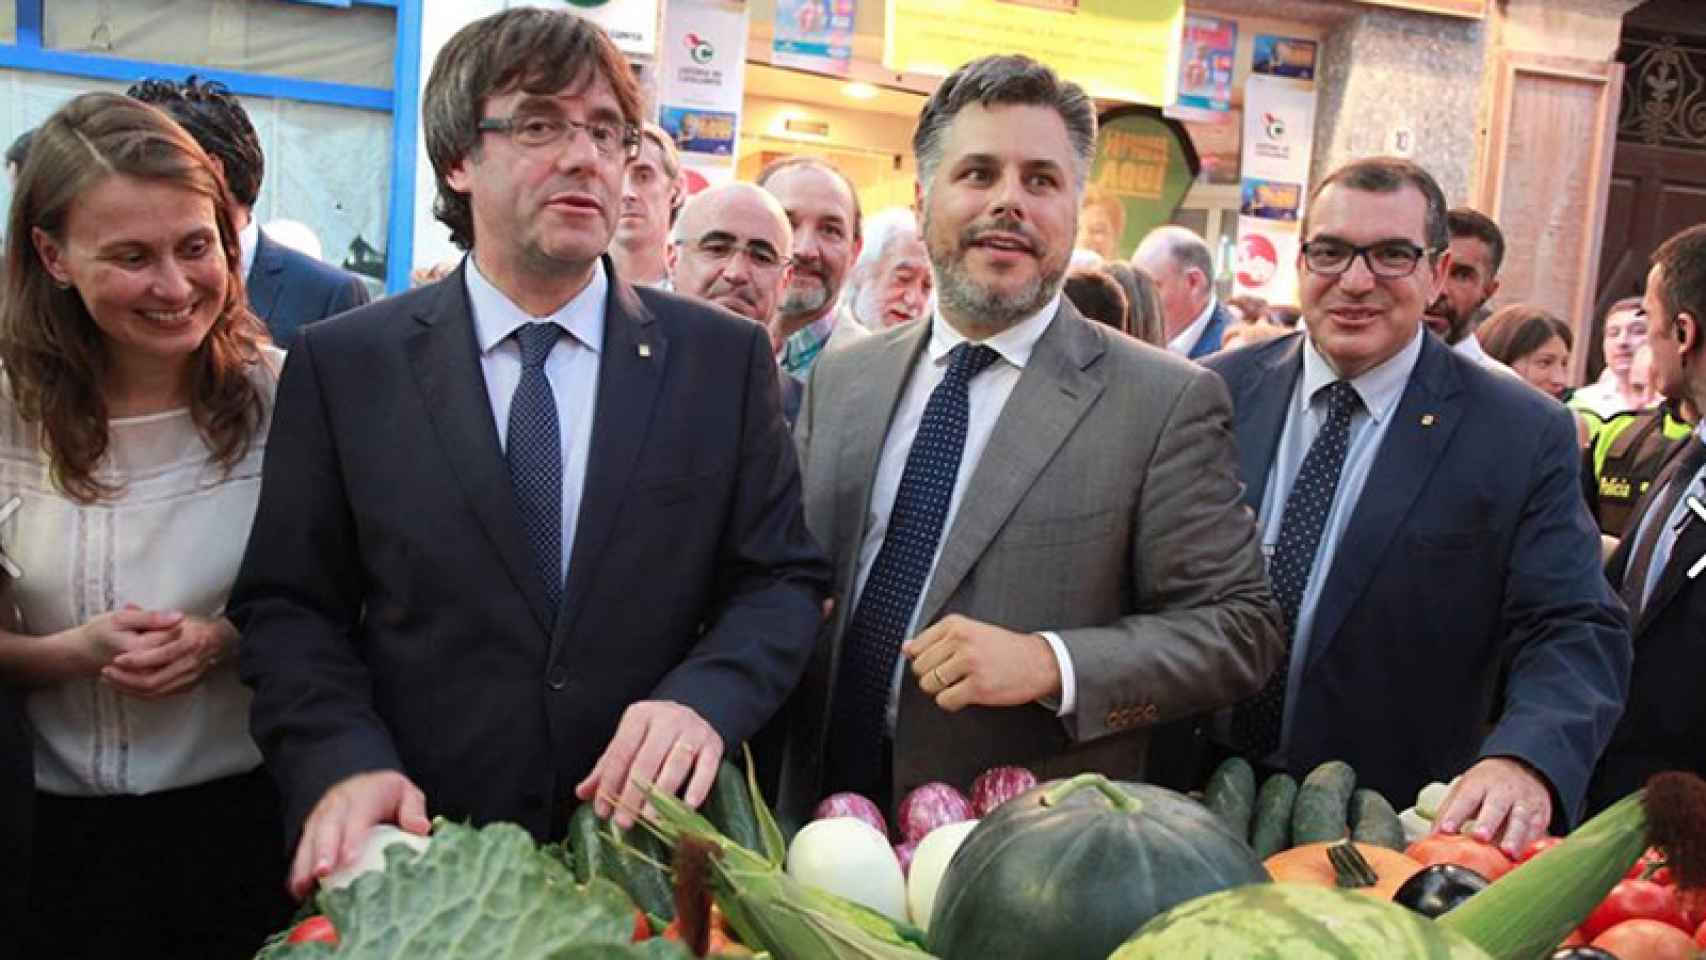 Albert Batet, alcalde de Valls (con barba) junto al presidente de la Generalitat Carles Puigdemont y el consejero de Interior, Jordi Jané. / CG